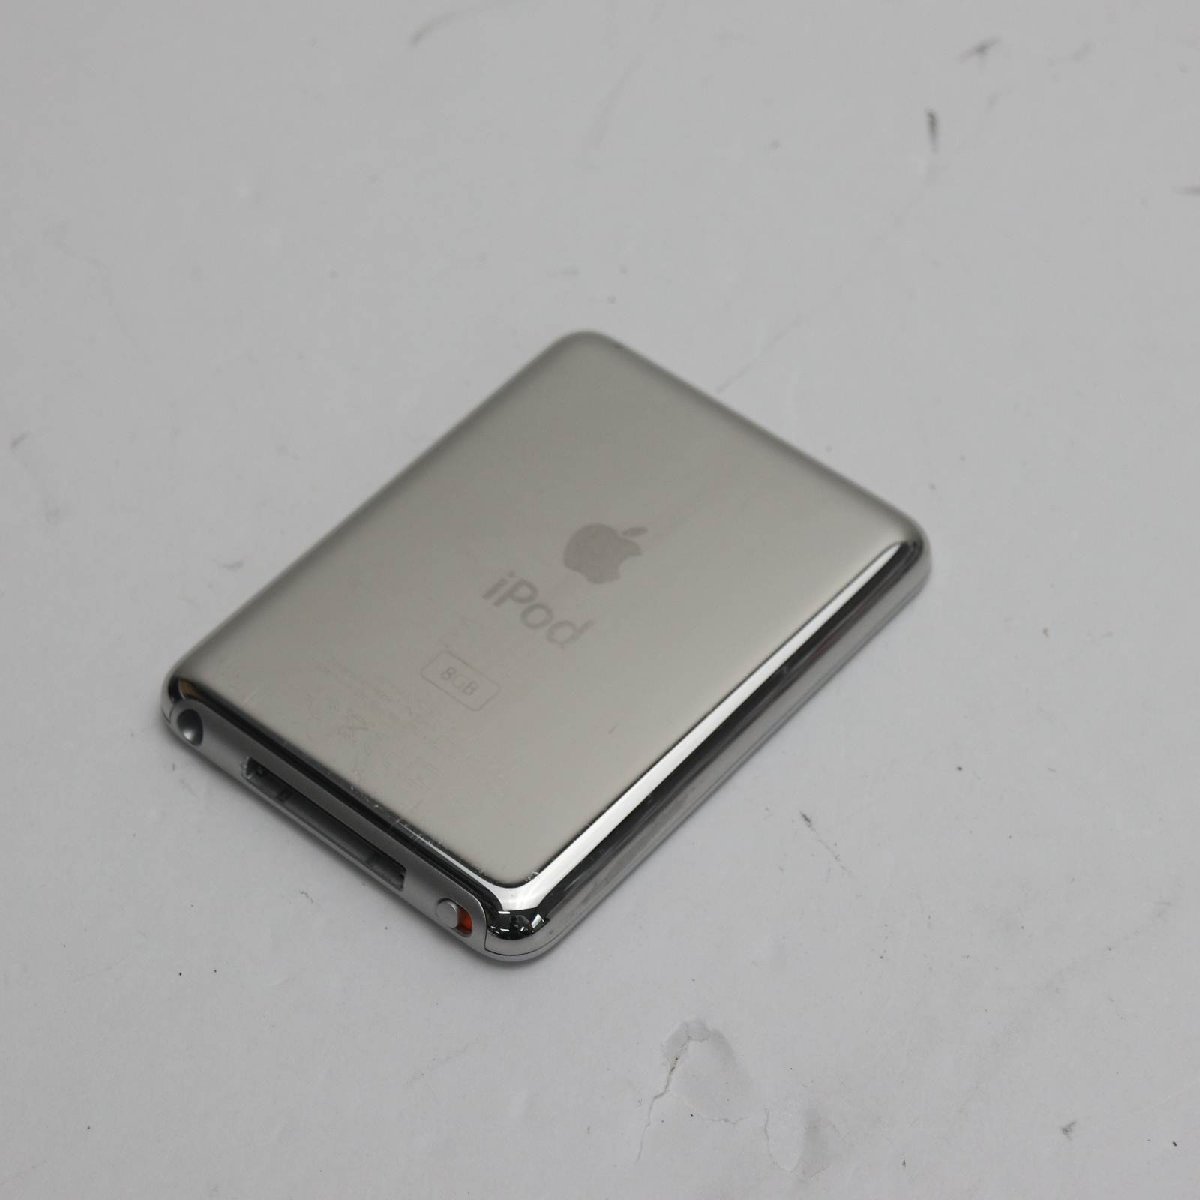 美品iPOD nano 第3世代8GB シルバー即日発送MA980J/A 本体あすつく土日